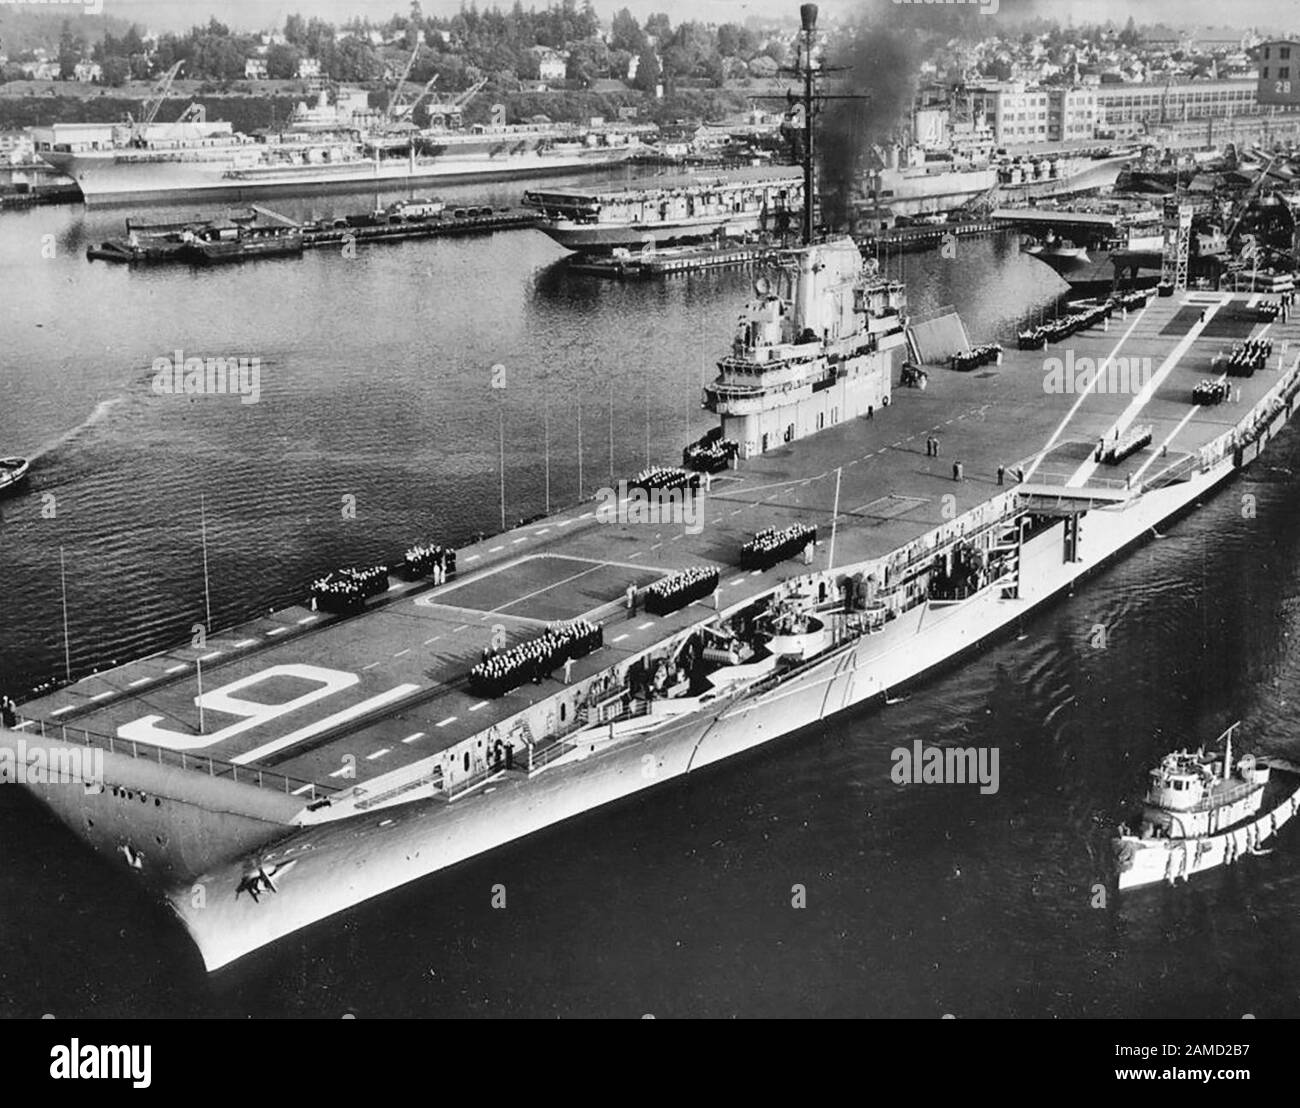 Le porte-avions US Navy USS Lexington (CVA-16) sort du chantier naval Puget Sound, Washington (États-Unis), vers septembre 1955, pour ses premiers essais en mer après les conversions SCB-27 C et -125. L'USS Franklin D. Roosevelt (CVA-42), à l'arrière-plan, est bien dans sa modernisation du SCB-110. USS Midway (CVA-41), à la distance moyenne, est dans les étapes très tôt de (ou être préparé pour) son propre SCB-110. Un autre transporteur de la classe Essex est visible sur la droite, soit USS Essex (CVA-9), soit USS Yorktown (CVA-10) pendant leurs conversions SCB-125. Vers Septembre 1955 Banque D'Images